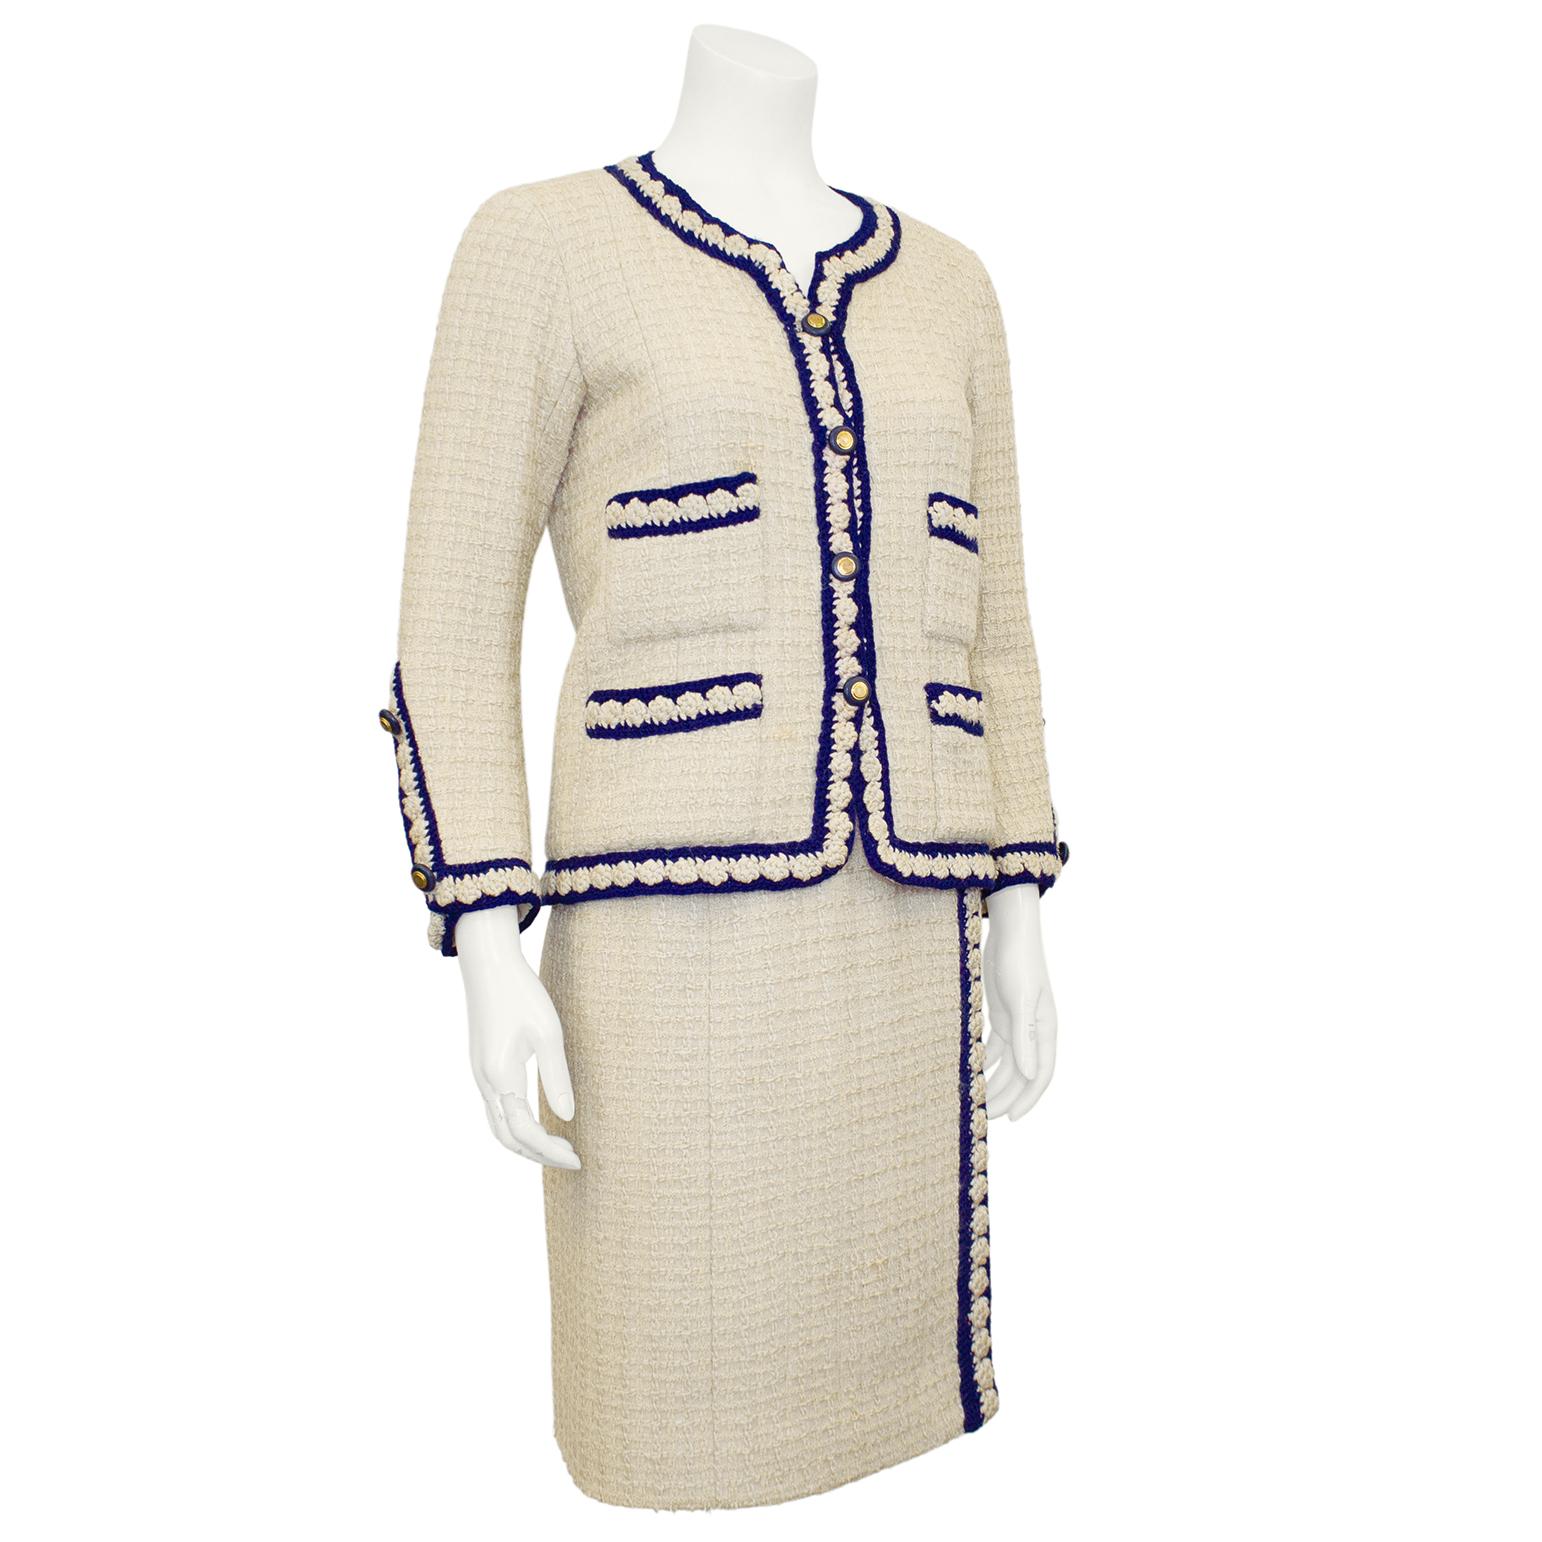 Combinaison emblématique de Chanel Haute Couture des années 1960, composée d'une boucle de laine crème et d'une bordure tressée marine, fermée par des boutons en métal doré sertis de bleu marine. Ce tailleur représente le look classique et